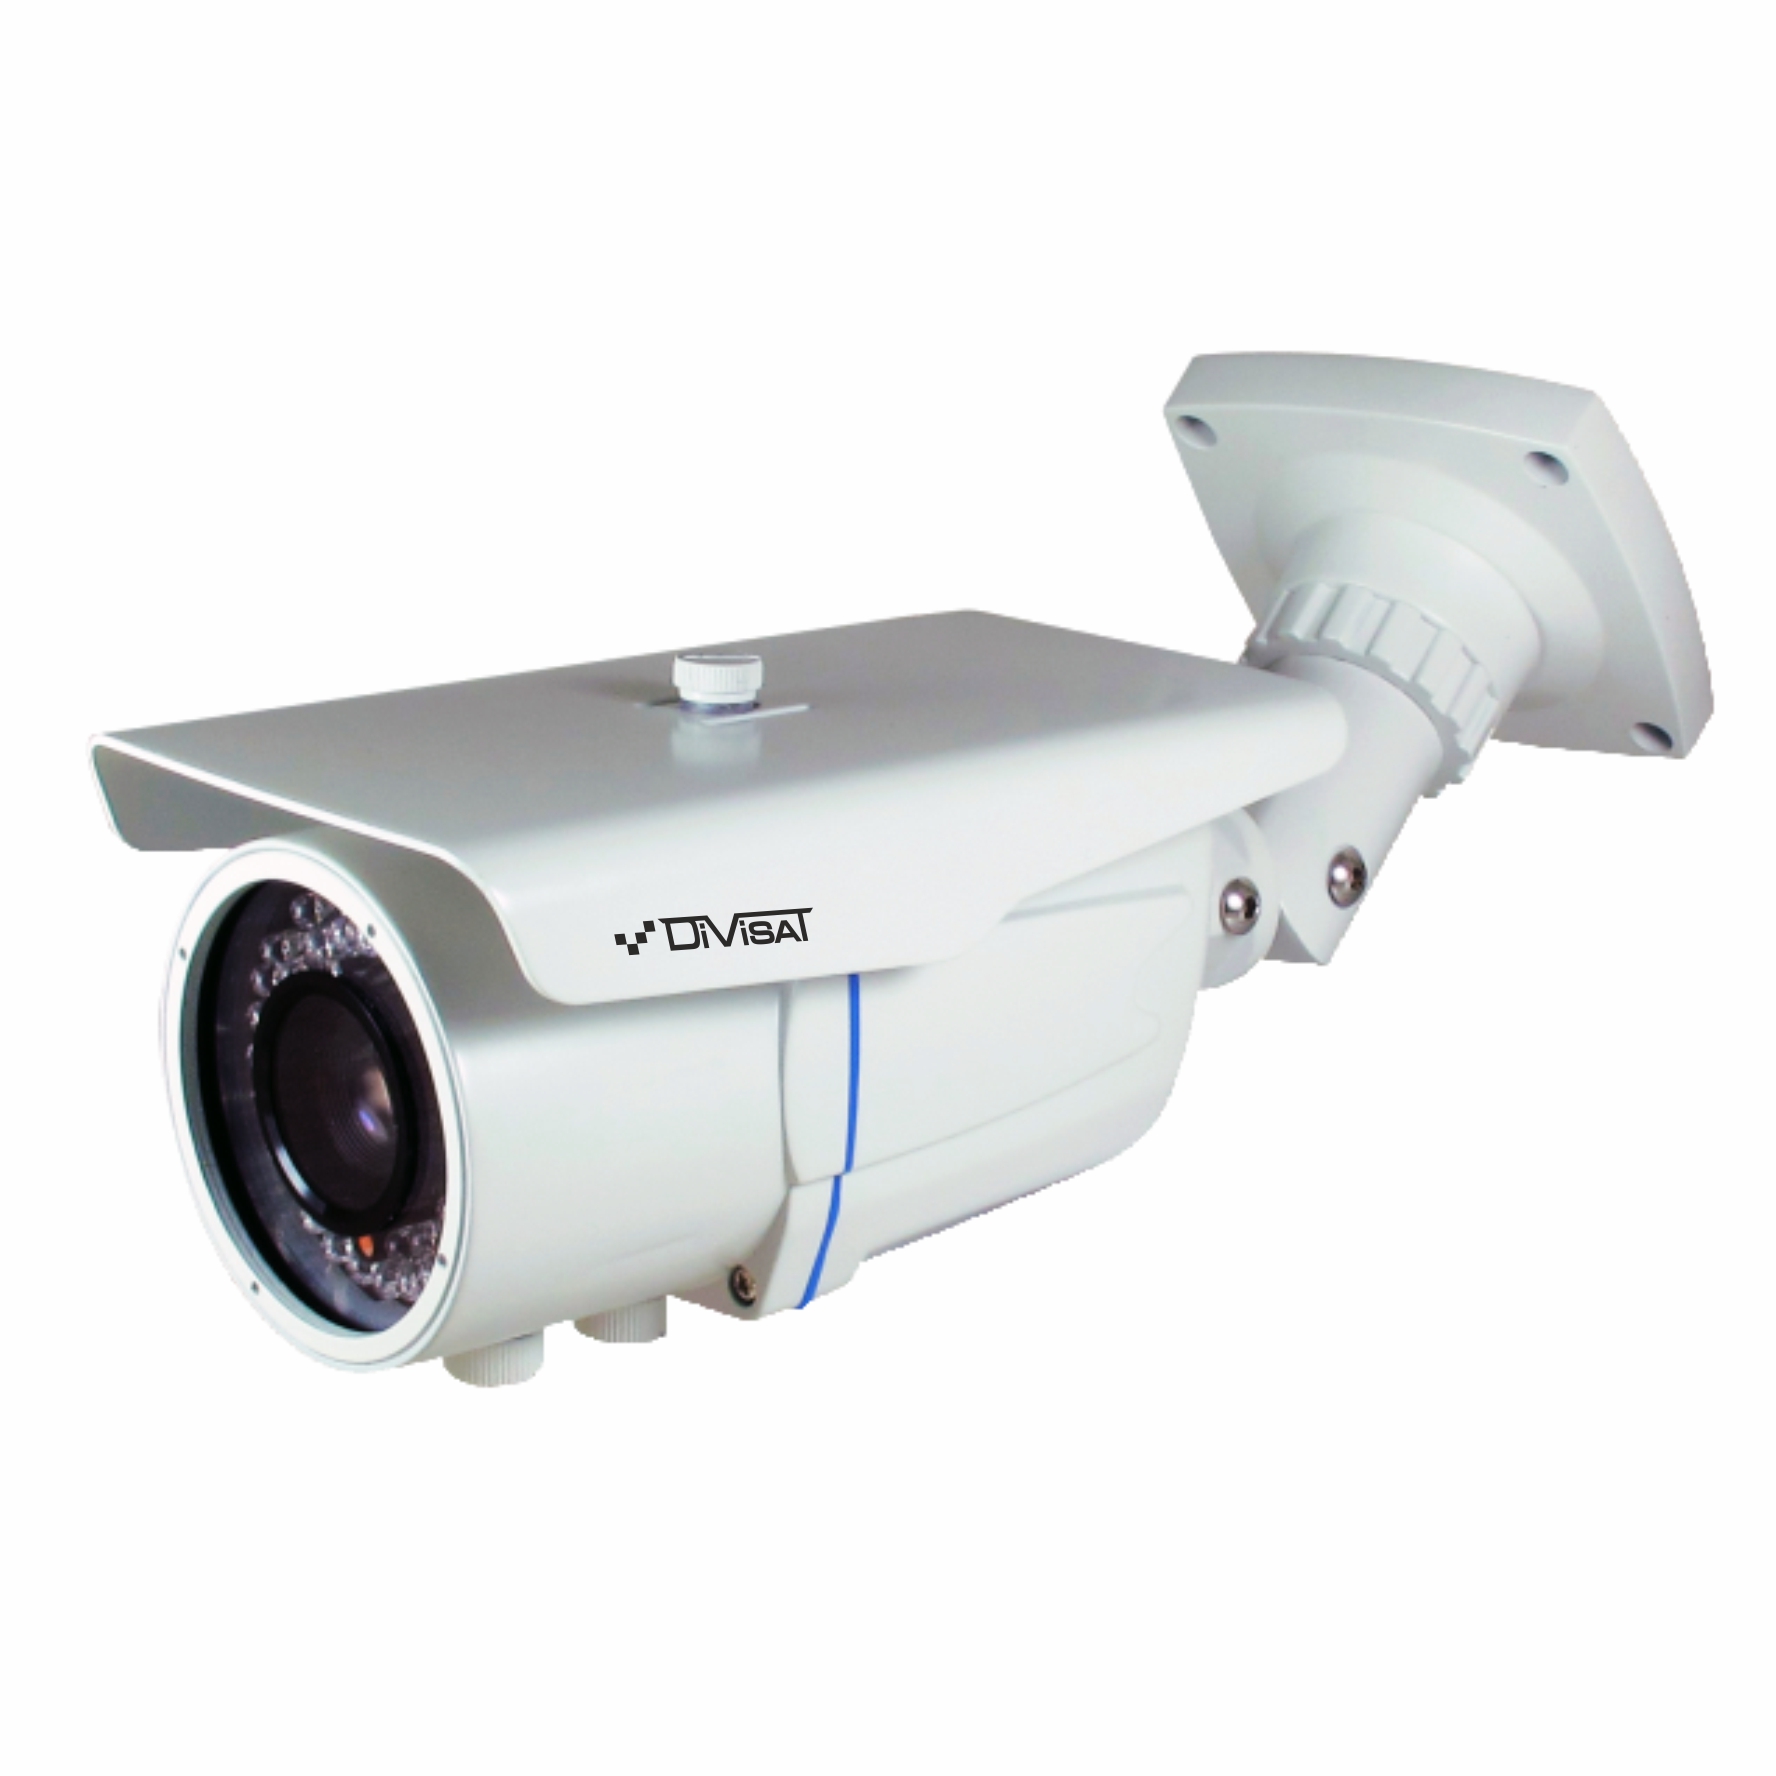 Видеокамера уличная Divisat DVC-S492 v.3.0 2.8-12 (2Mpix, ИК до 40м)